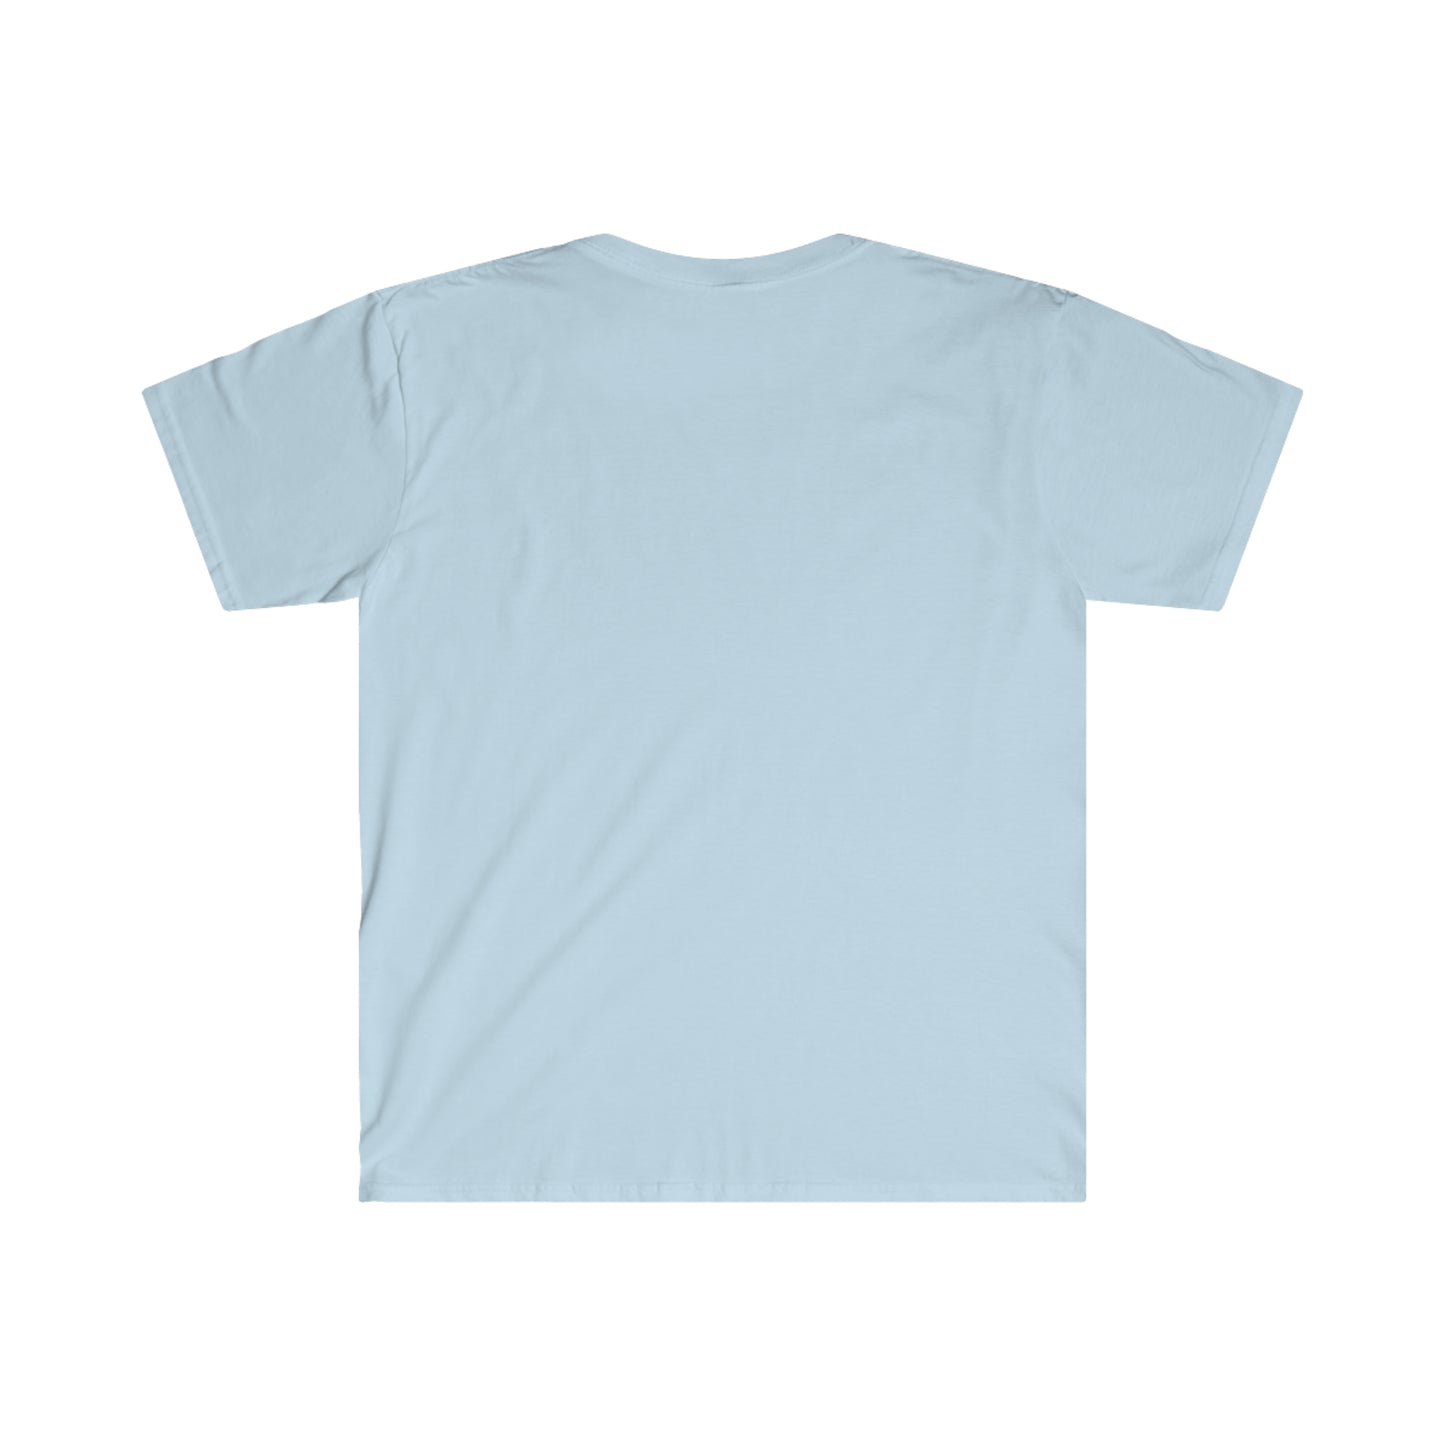 Generosity Unisex Softstyle T-Shirt